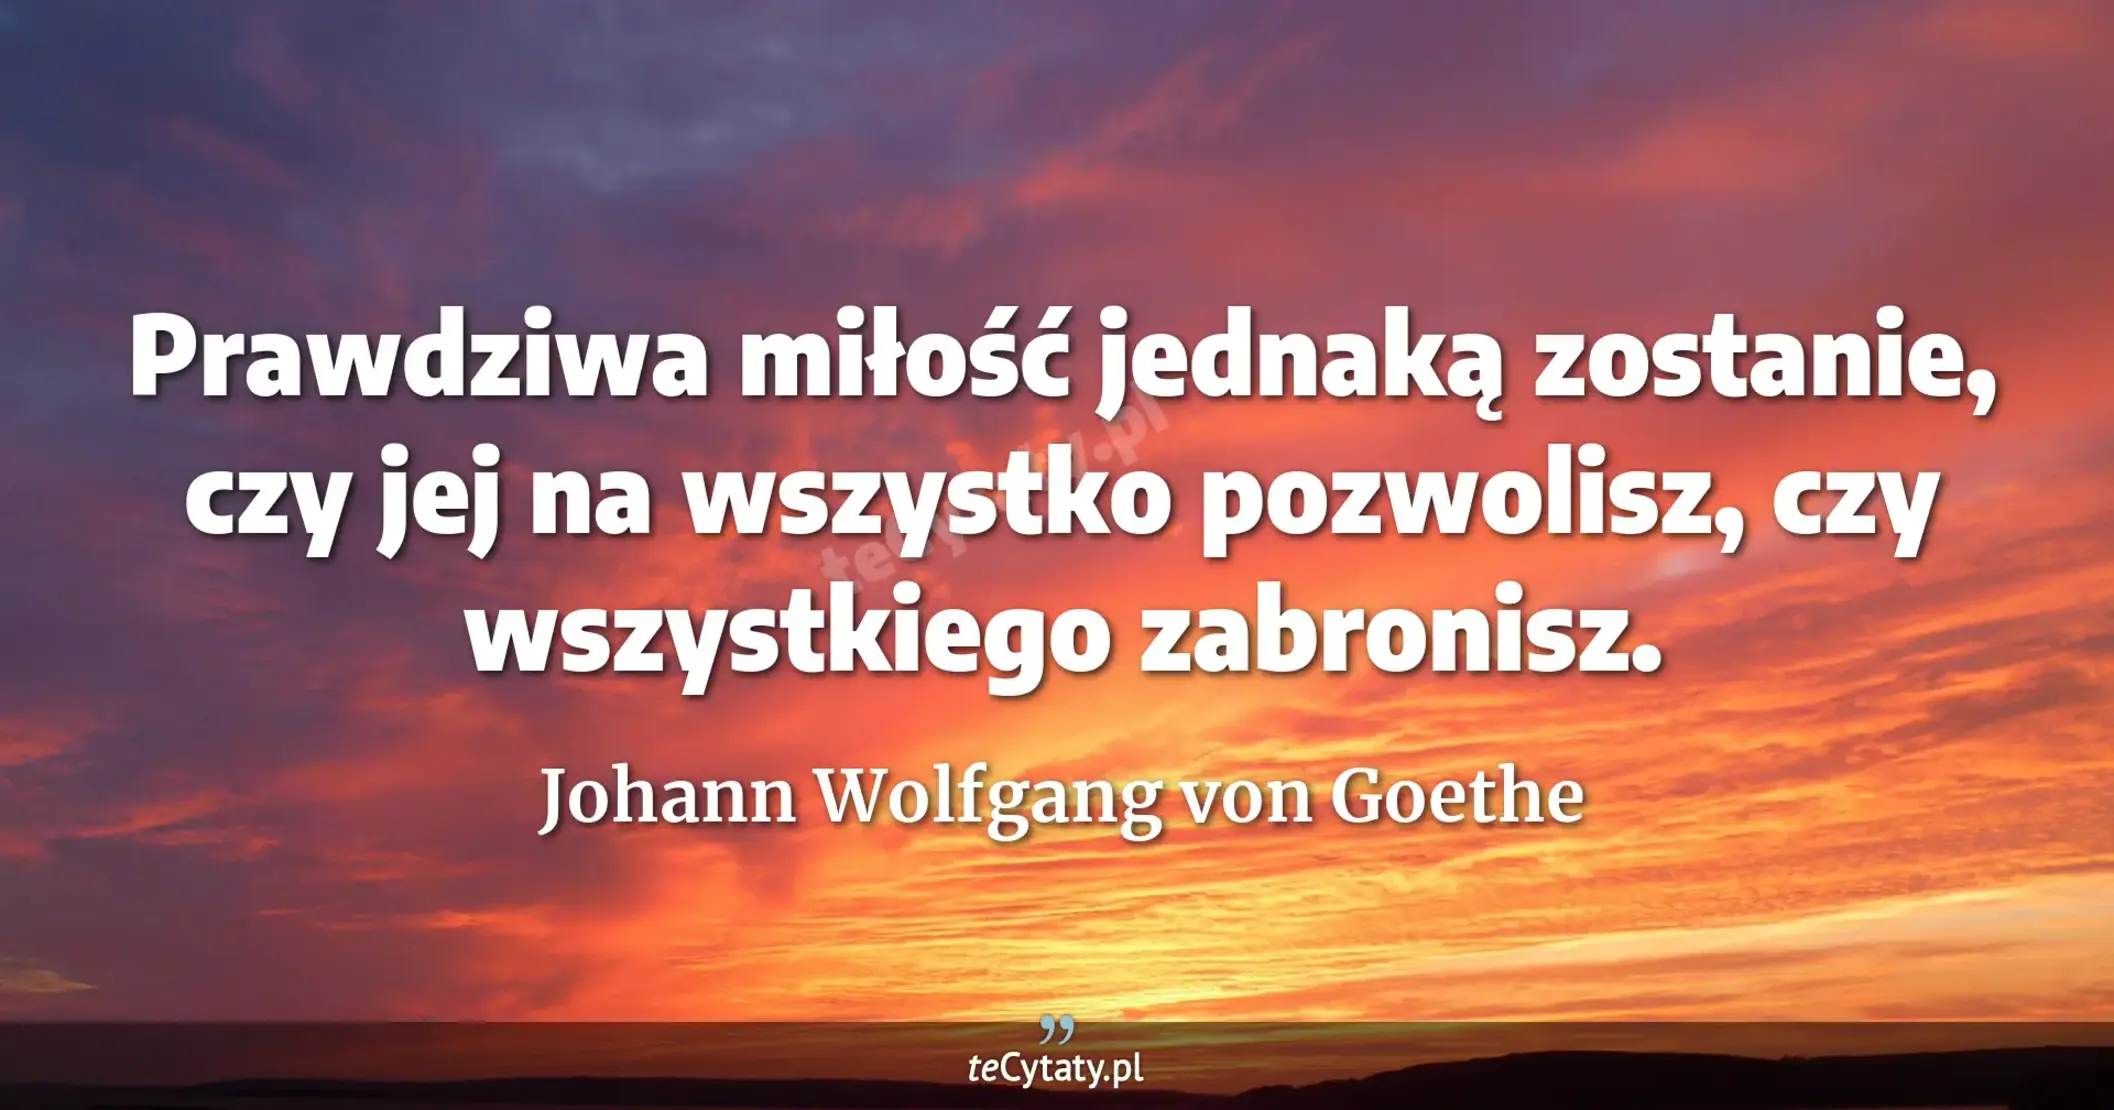 Prawdziwa miłość jednaką zostanie, czy jej na wszystko pozwolisz, czy wszystkiego zabronisz. - Johann Wolfgang von Goethe